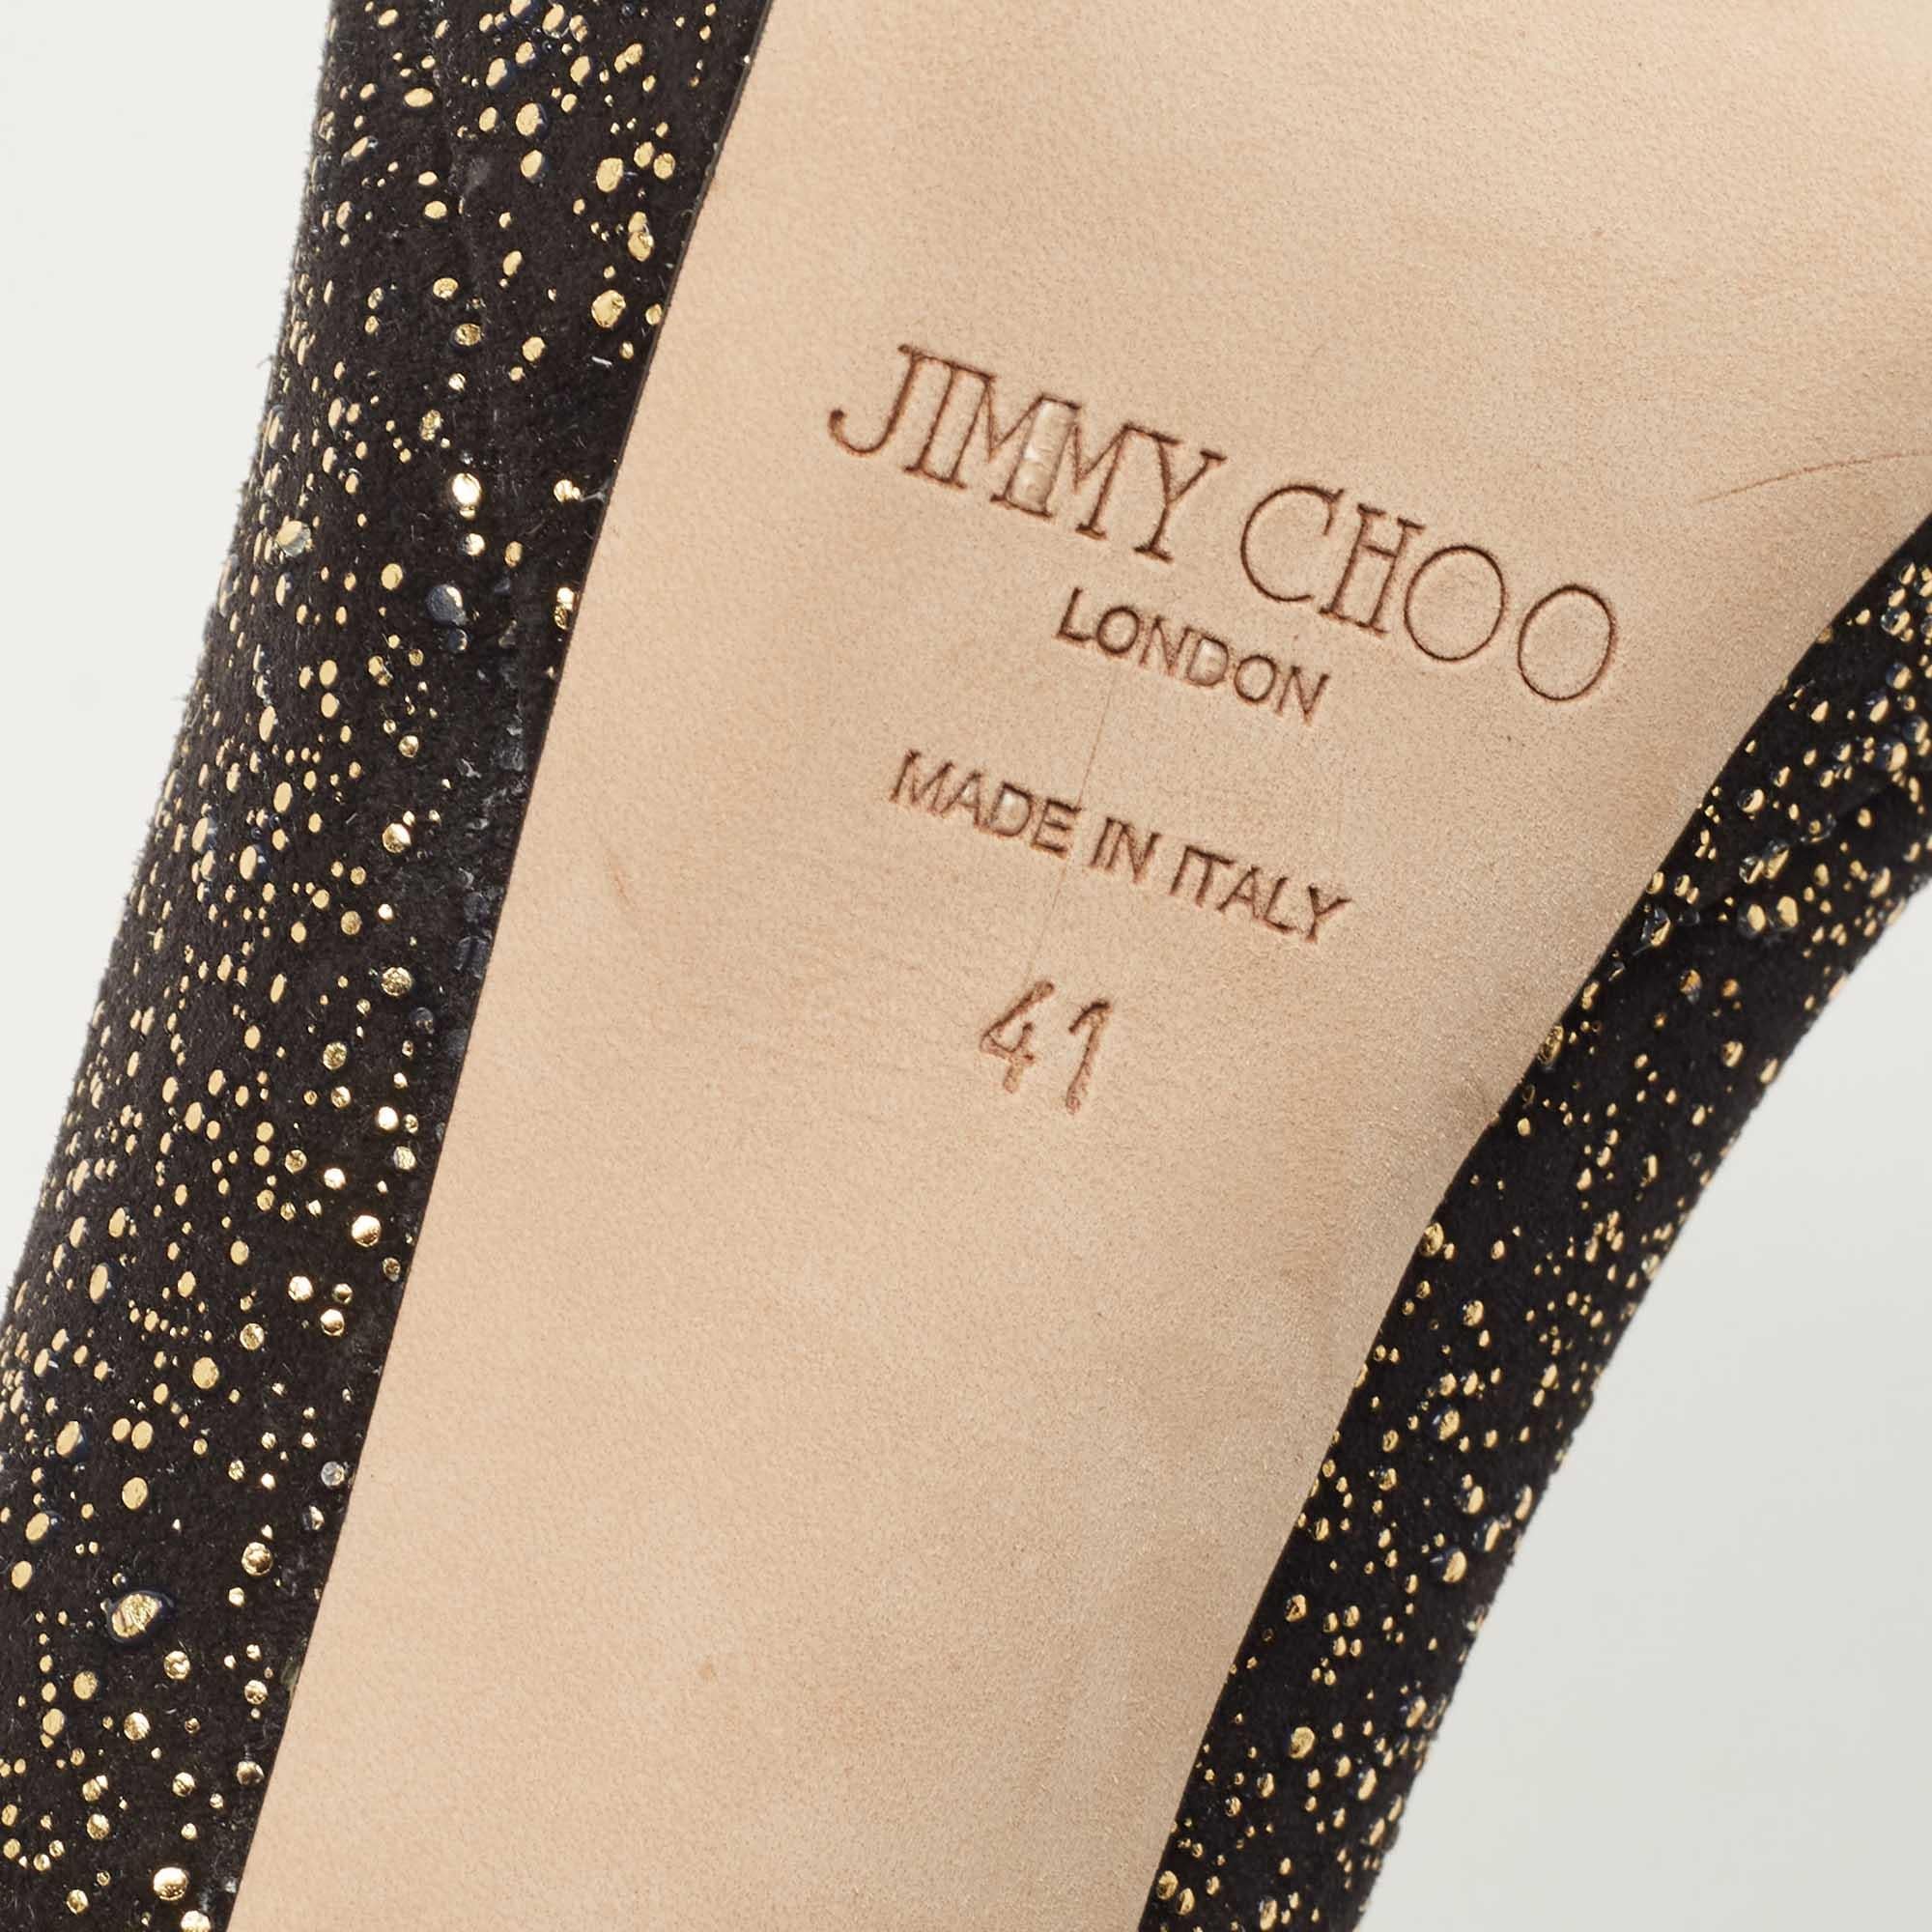 Jimmy Choo Black Textured Suede Crown Platform Peep Toe Pumps Size 41 4